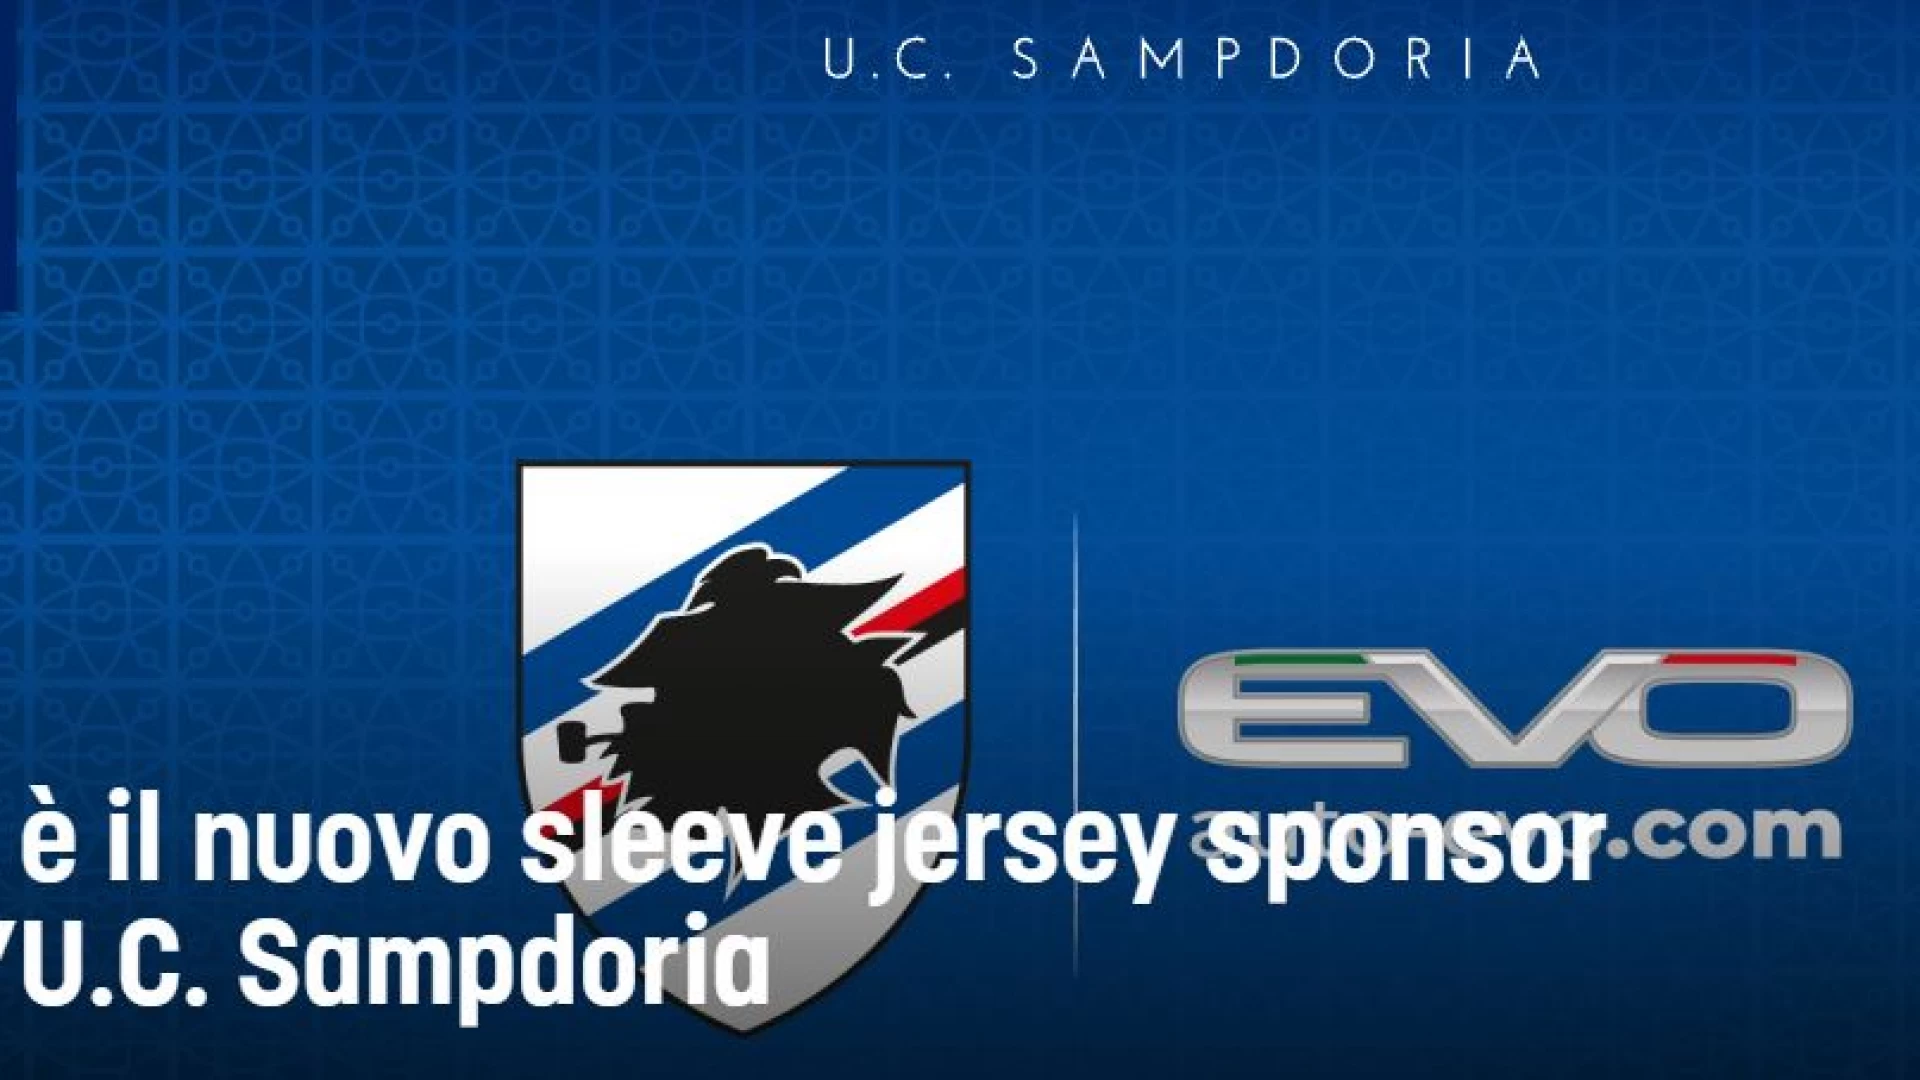 EVO è il nuovo sleeve jersey sponsor dell’U.C. Sampdoria